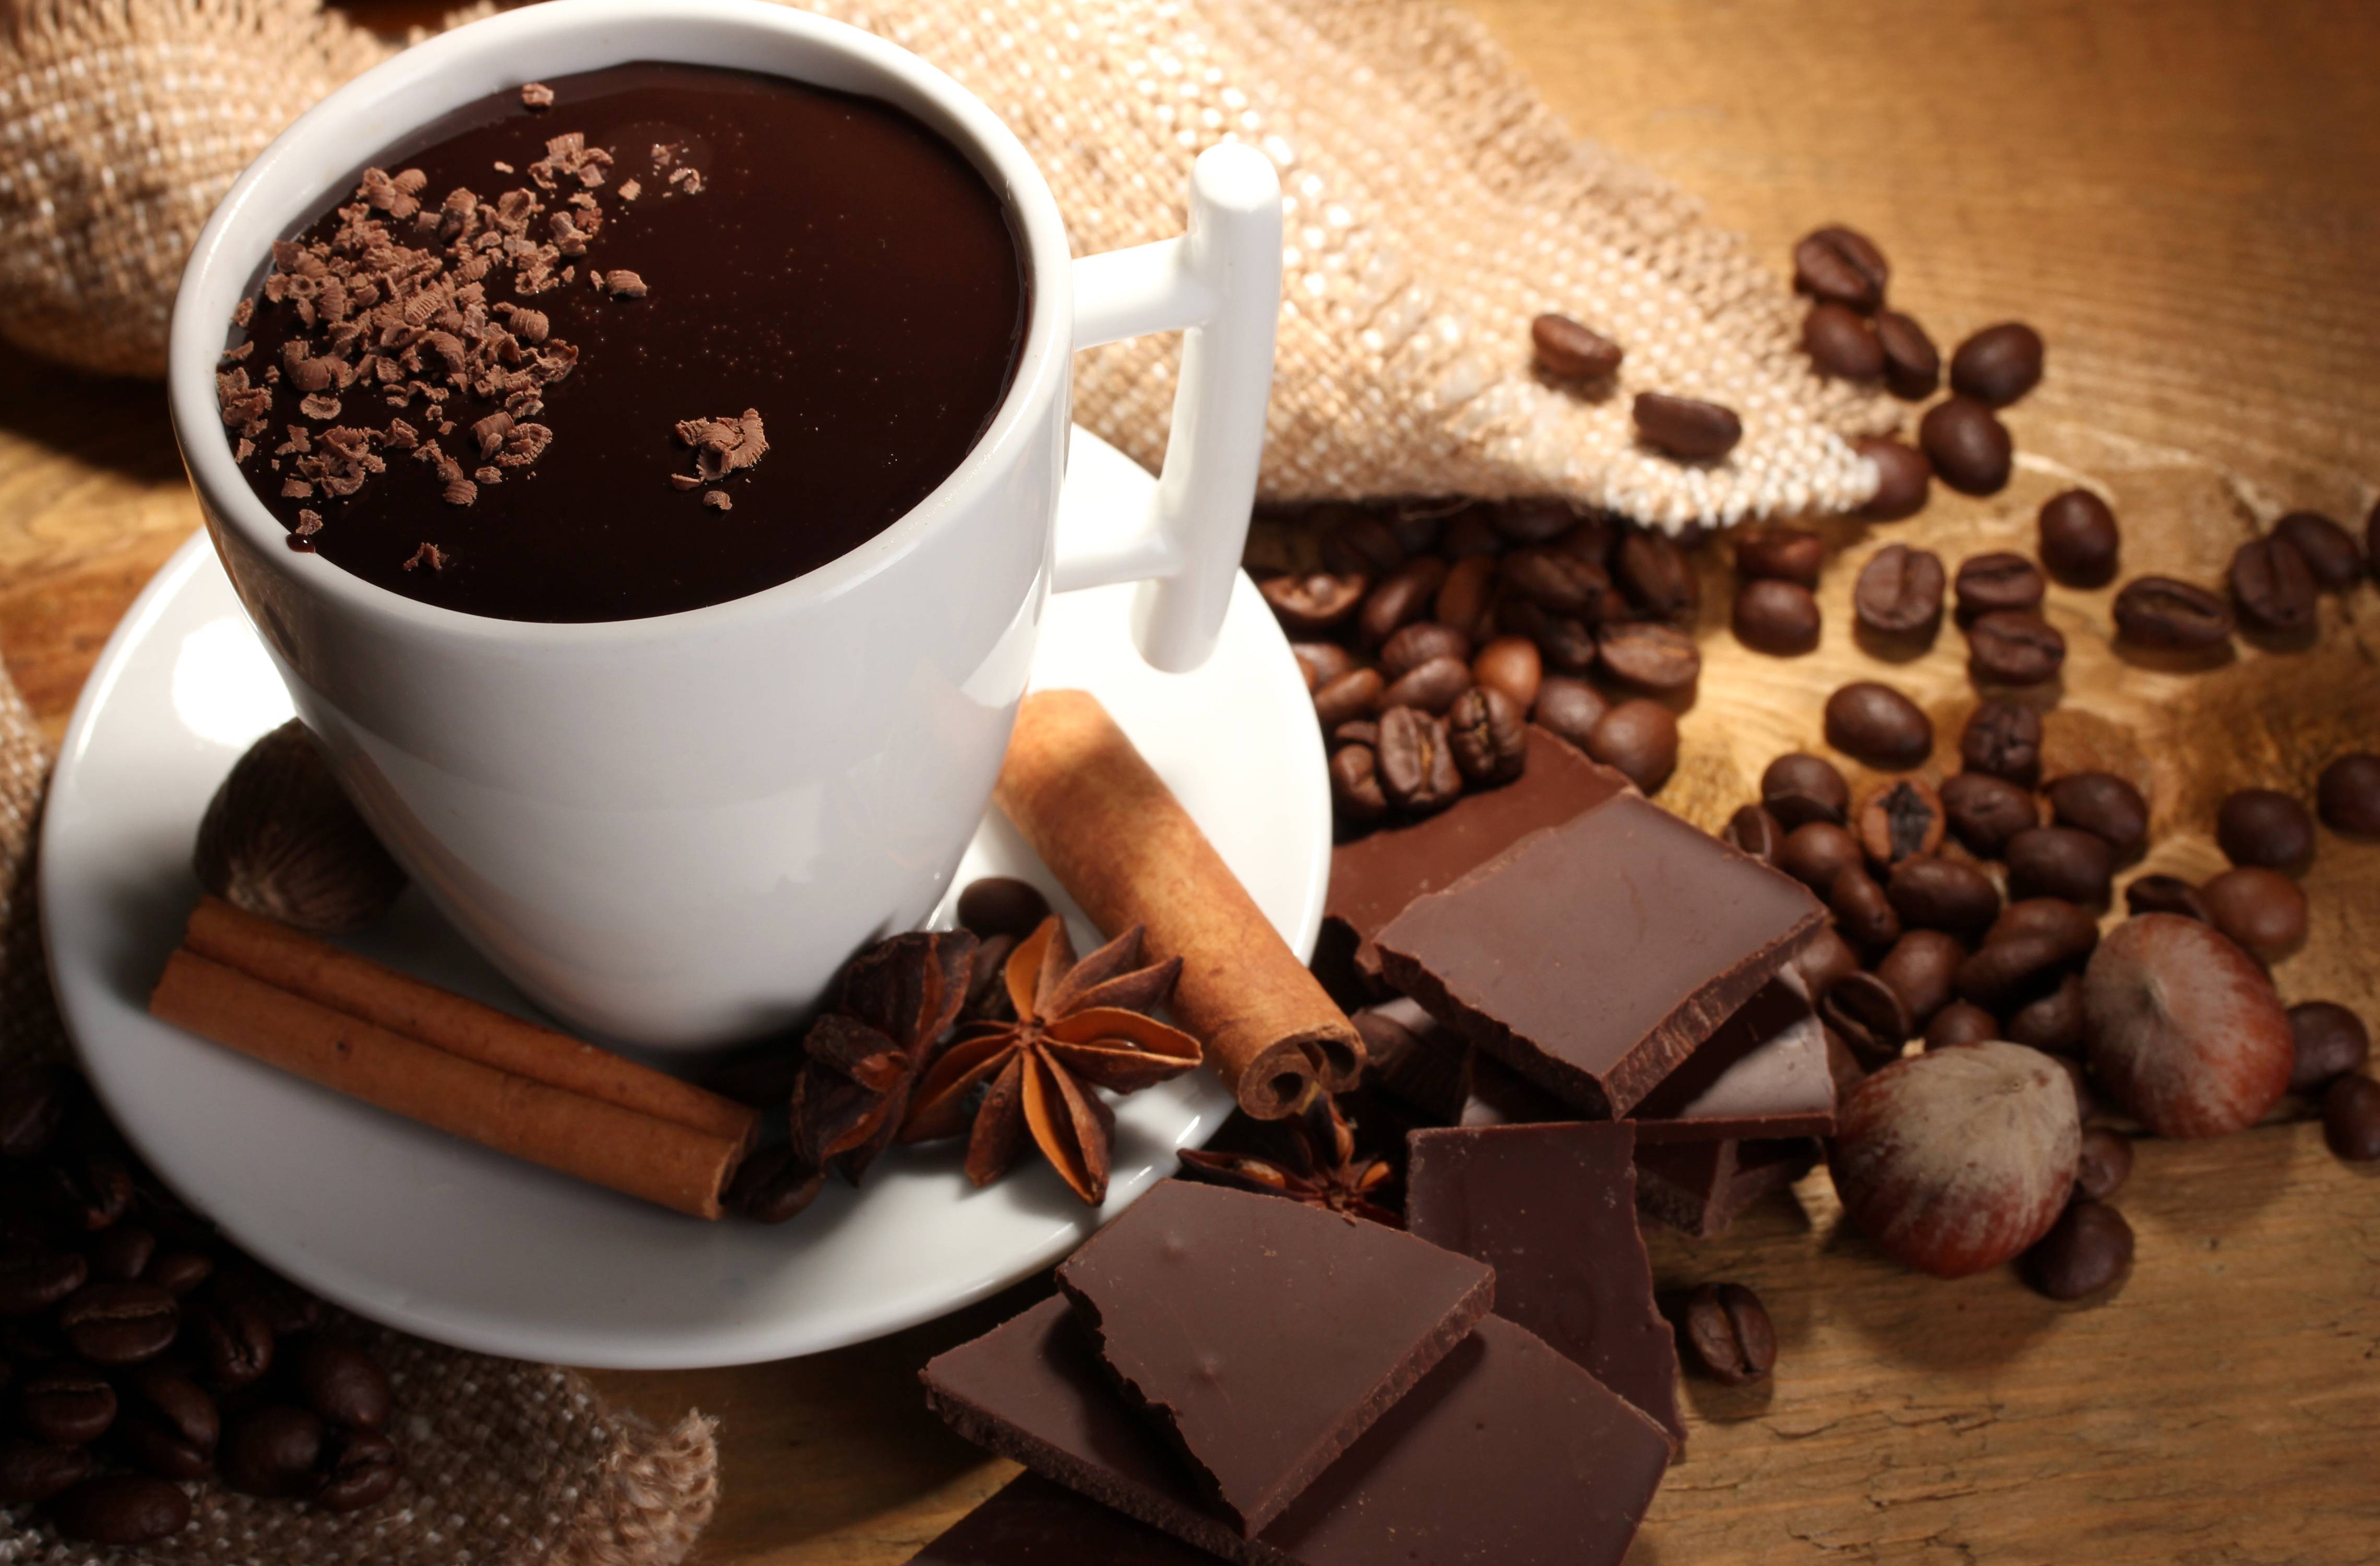 Кофейное зерно в шоколаде - необычная сладость и отличный подарок